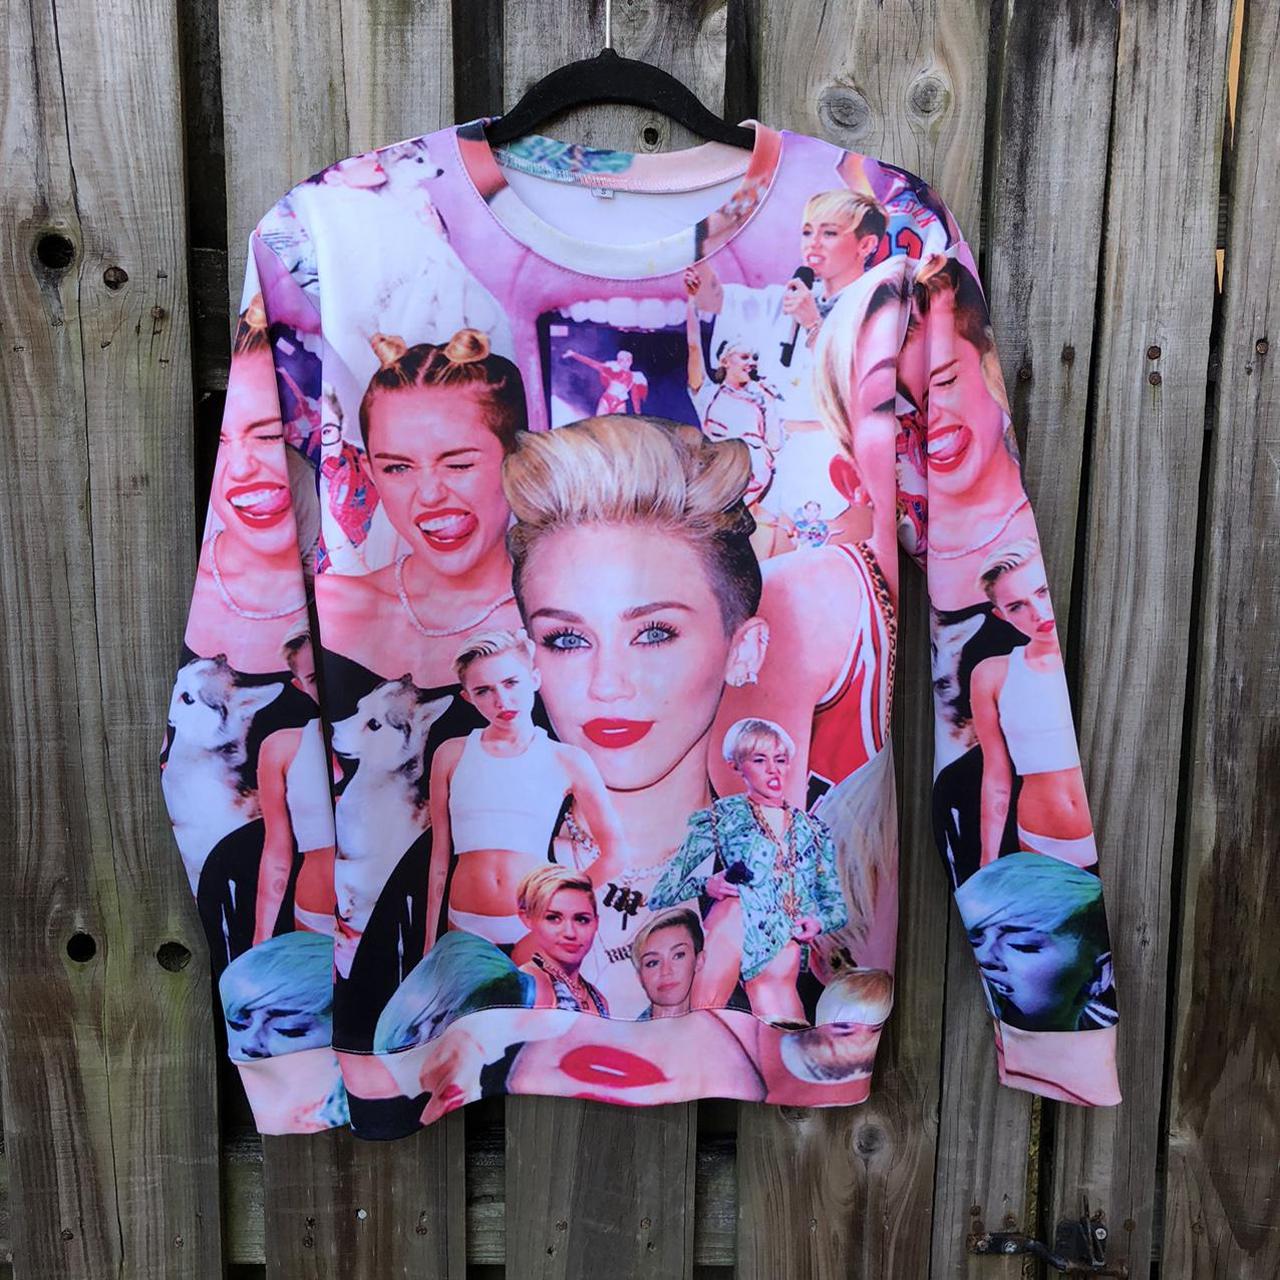 Product Image 2 - Miley Cyrus Bangerz era sweatshirt